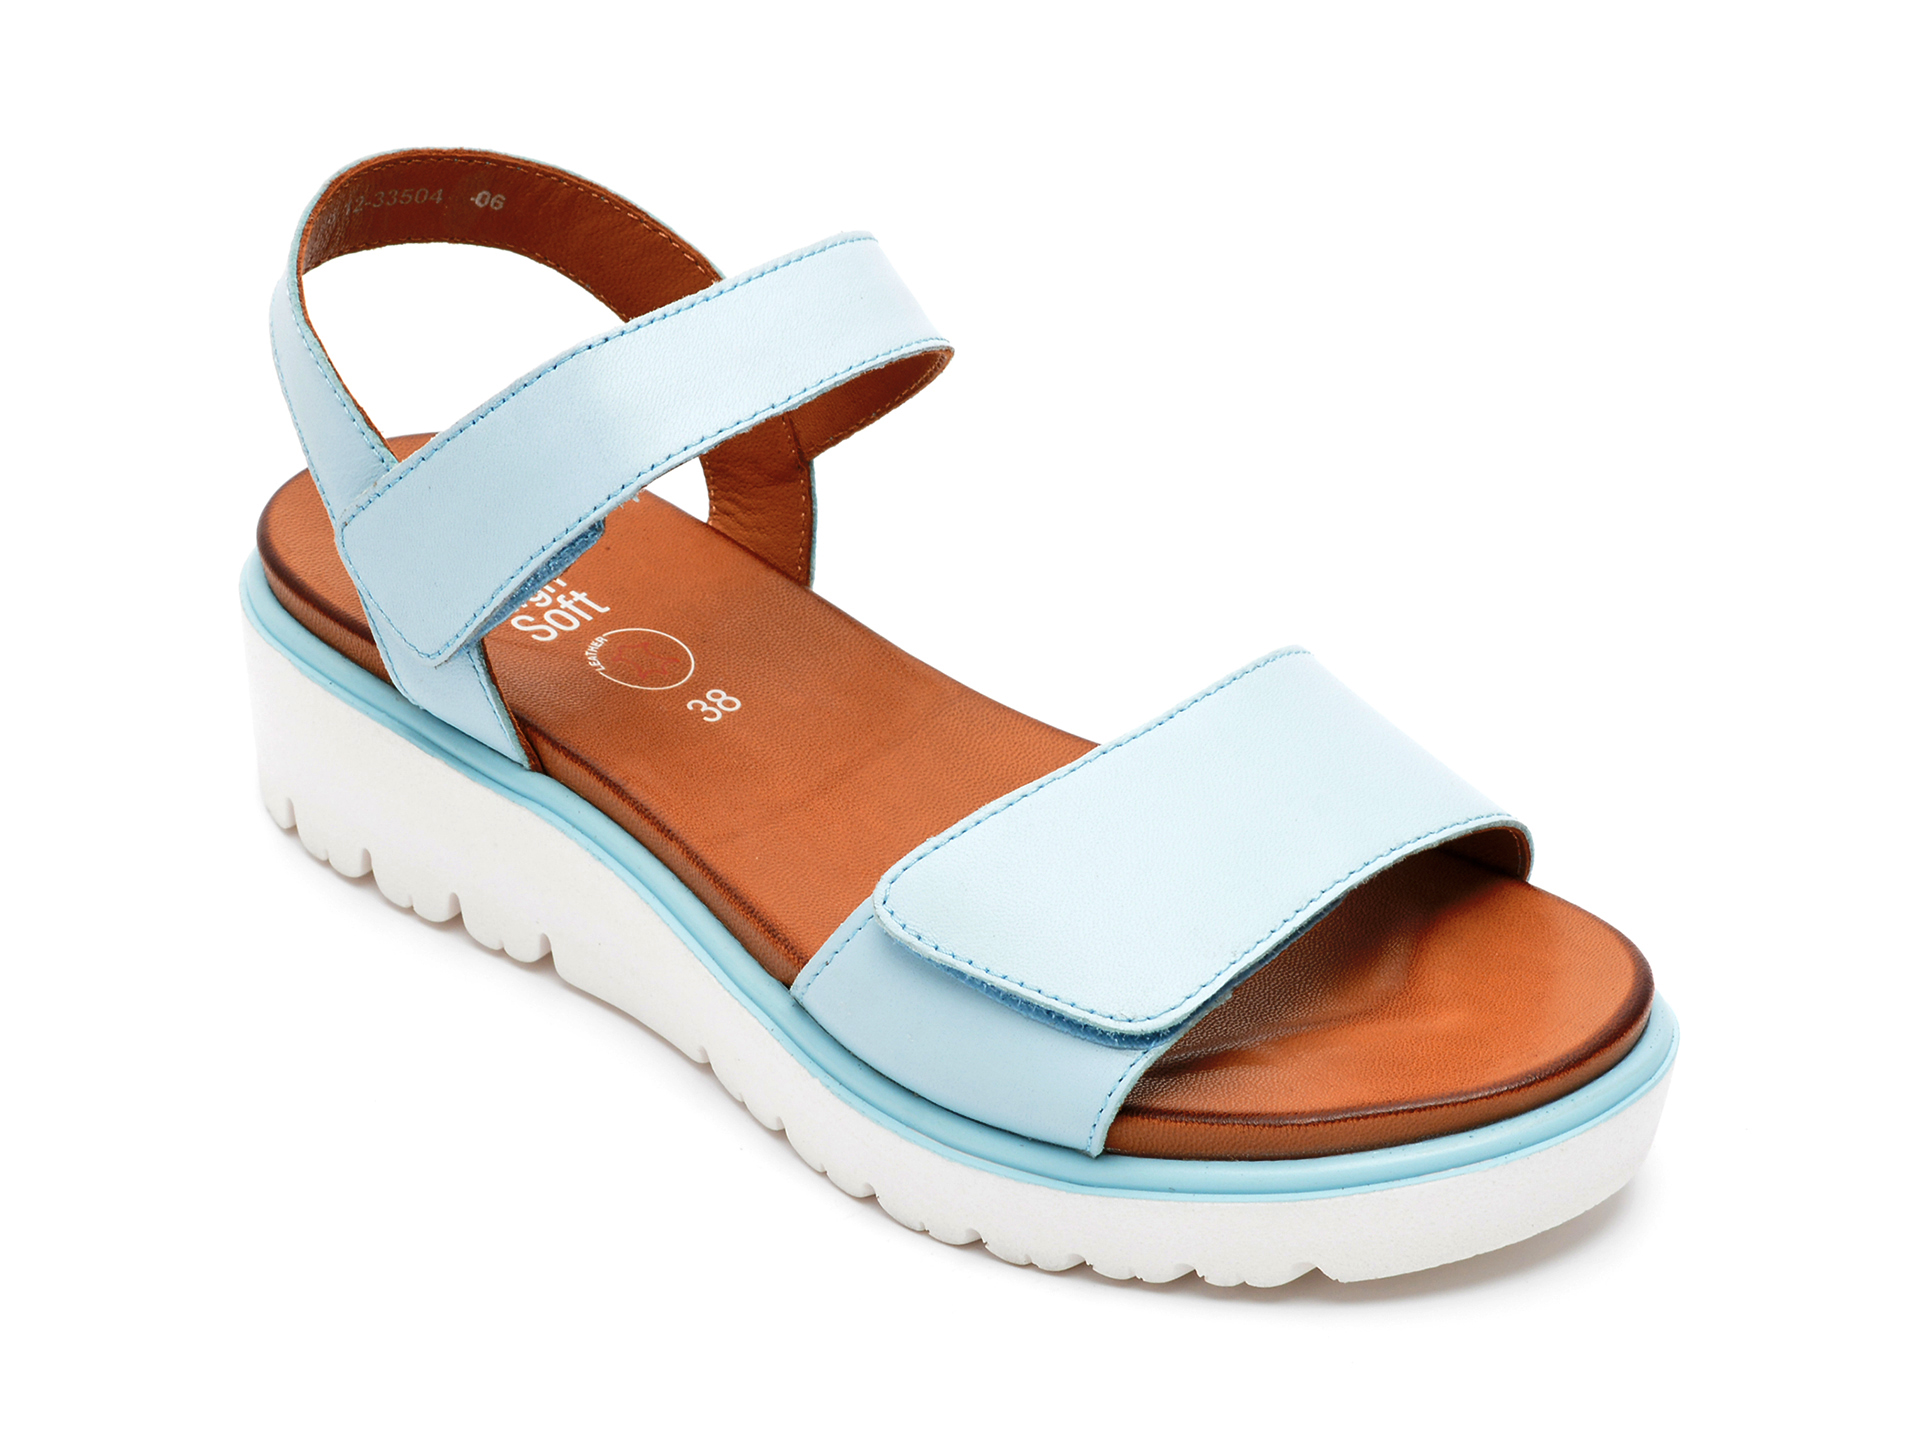 Sandale ARA albastre, 33504, din piele naturala /femei/sandale